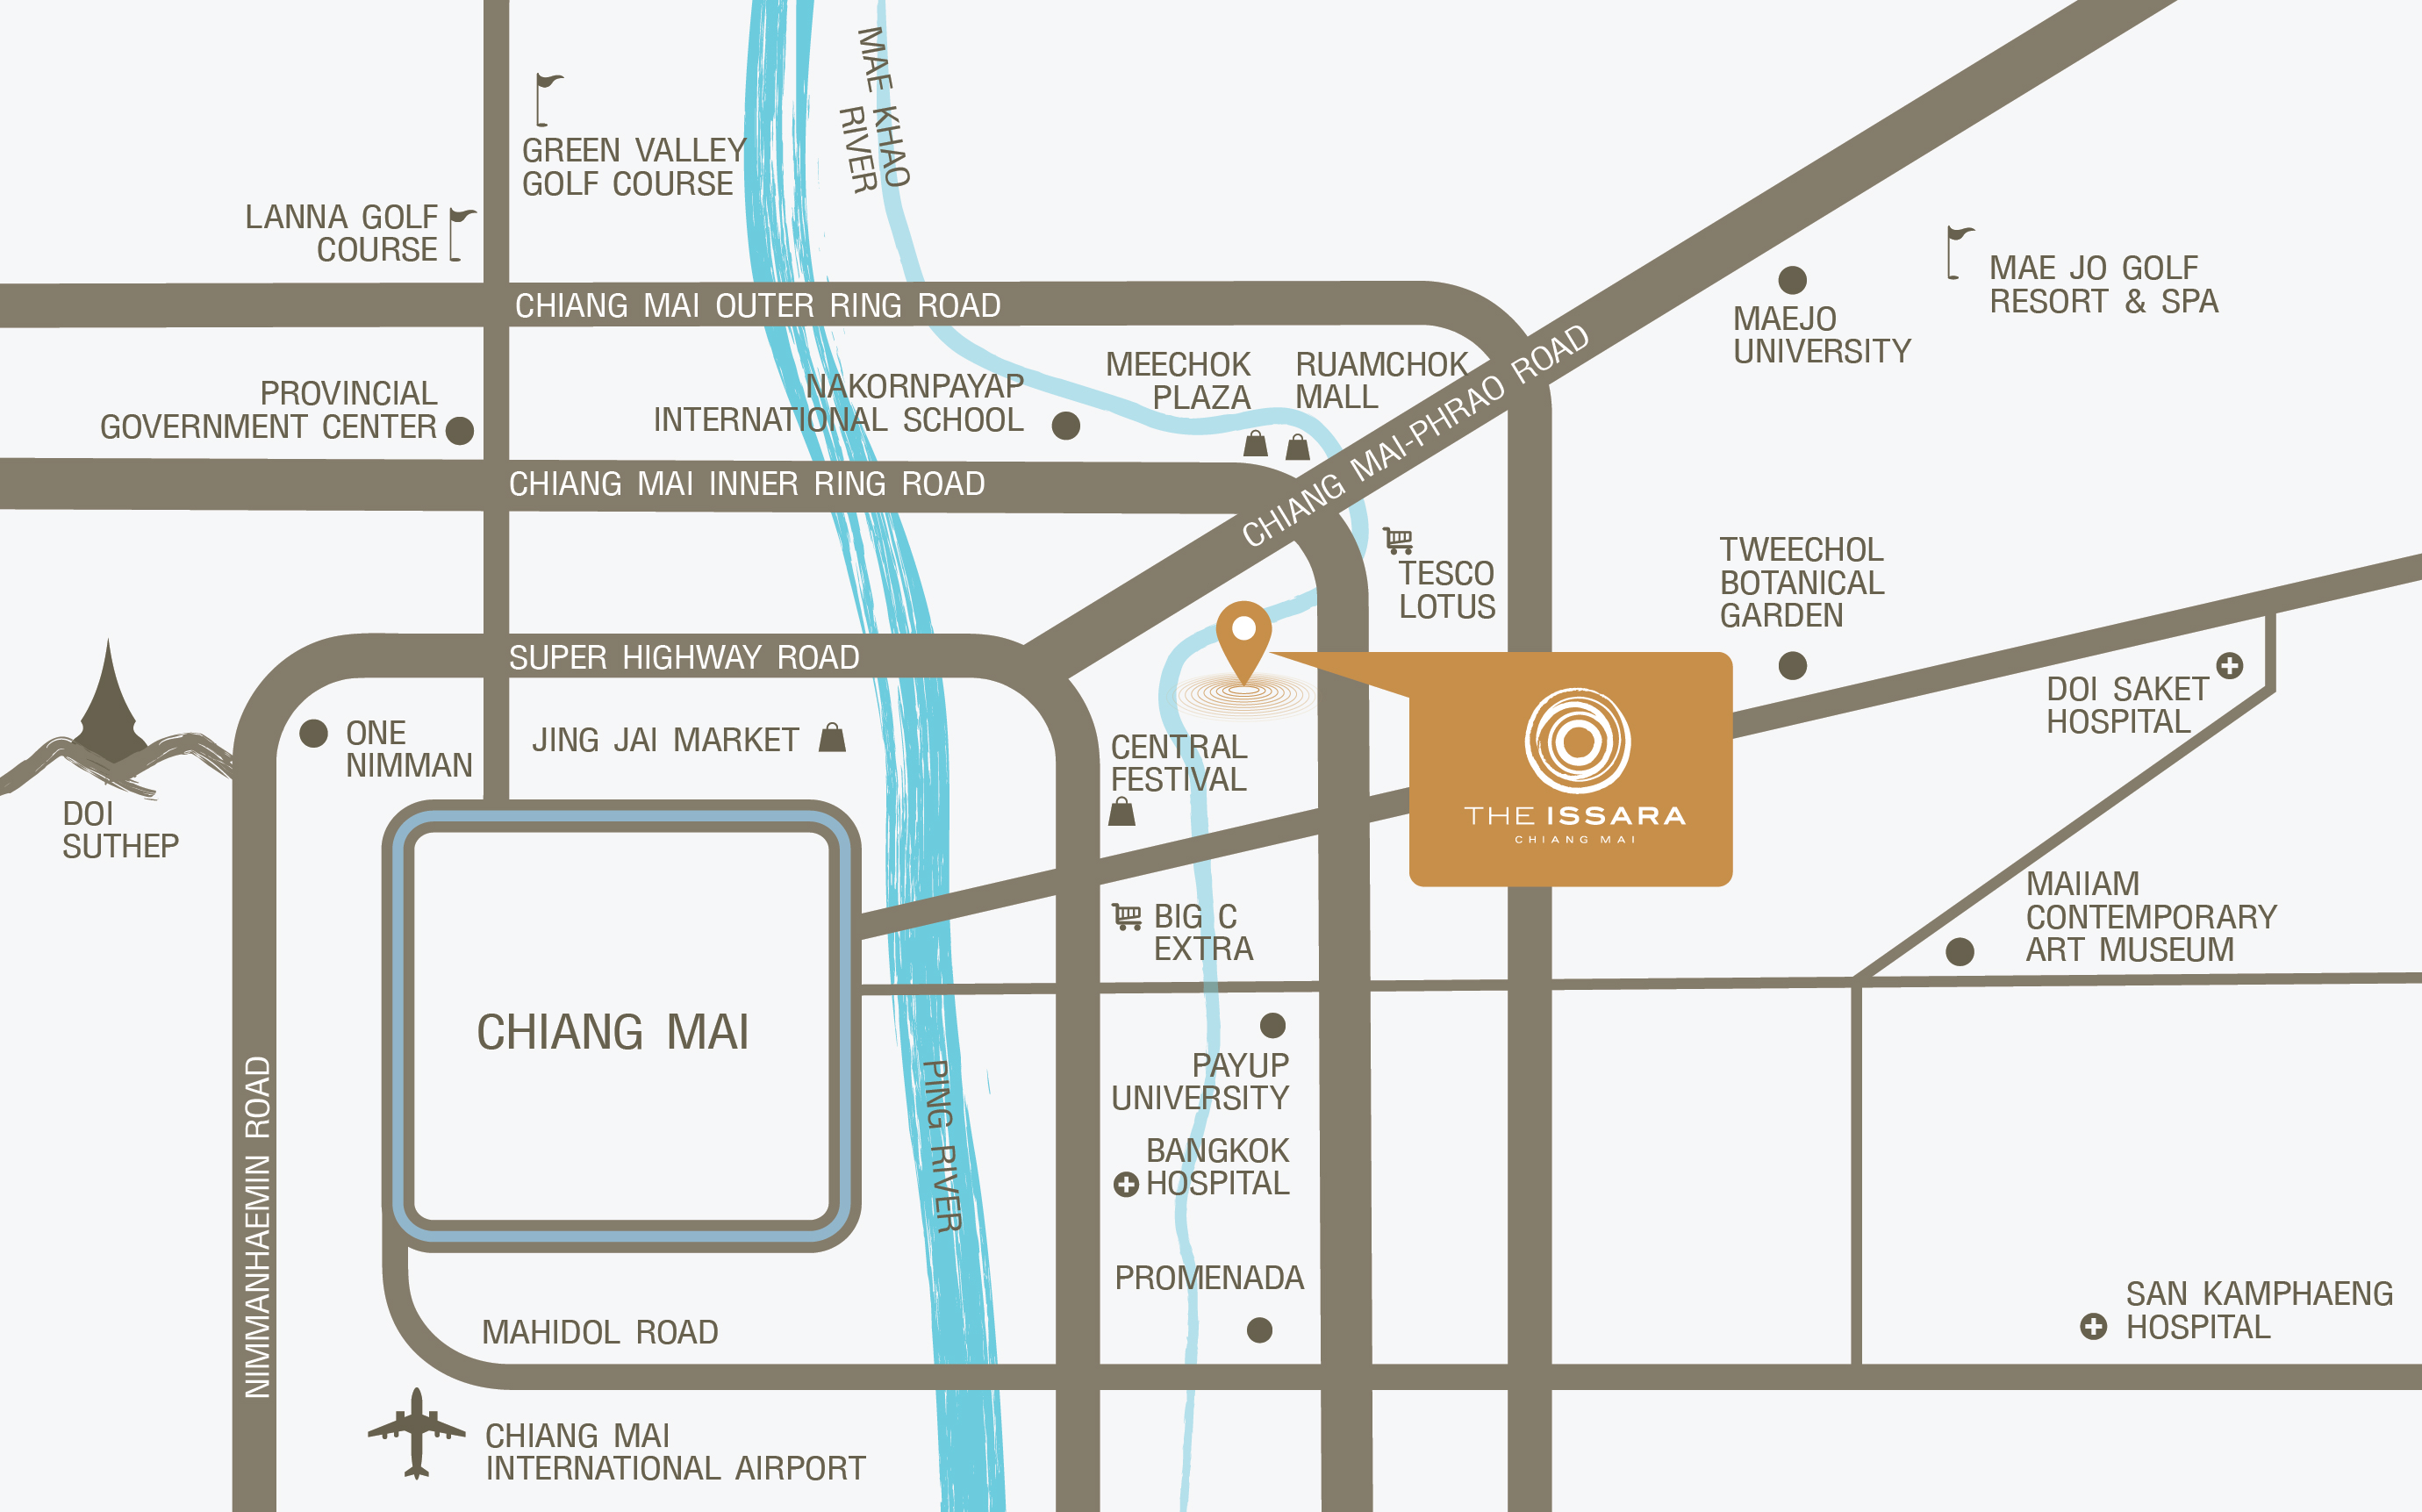 Condo The Issara chiangmai-Map Location